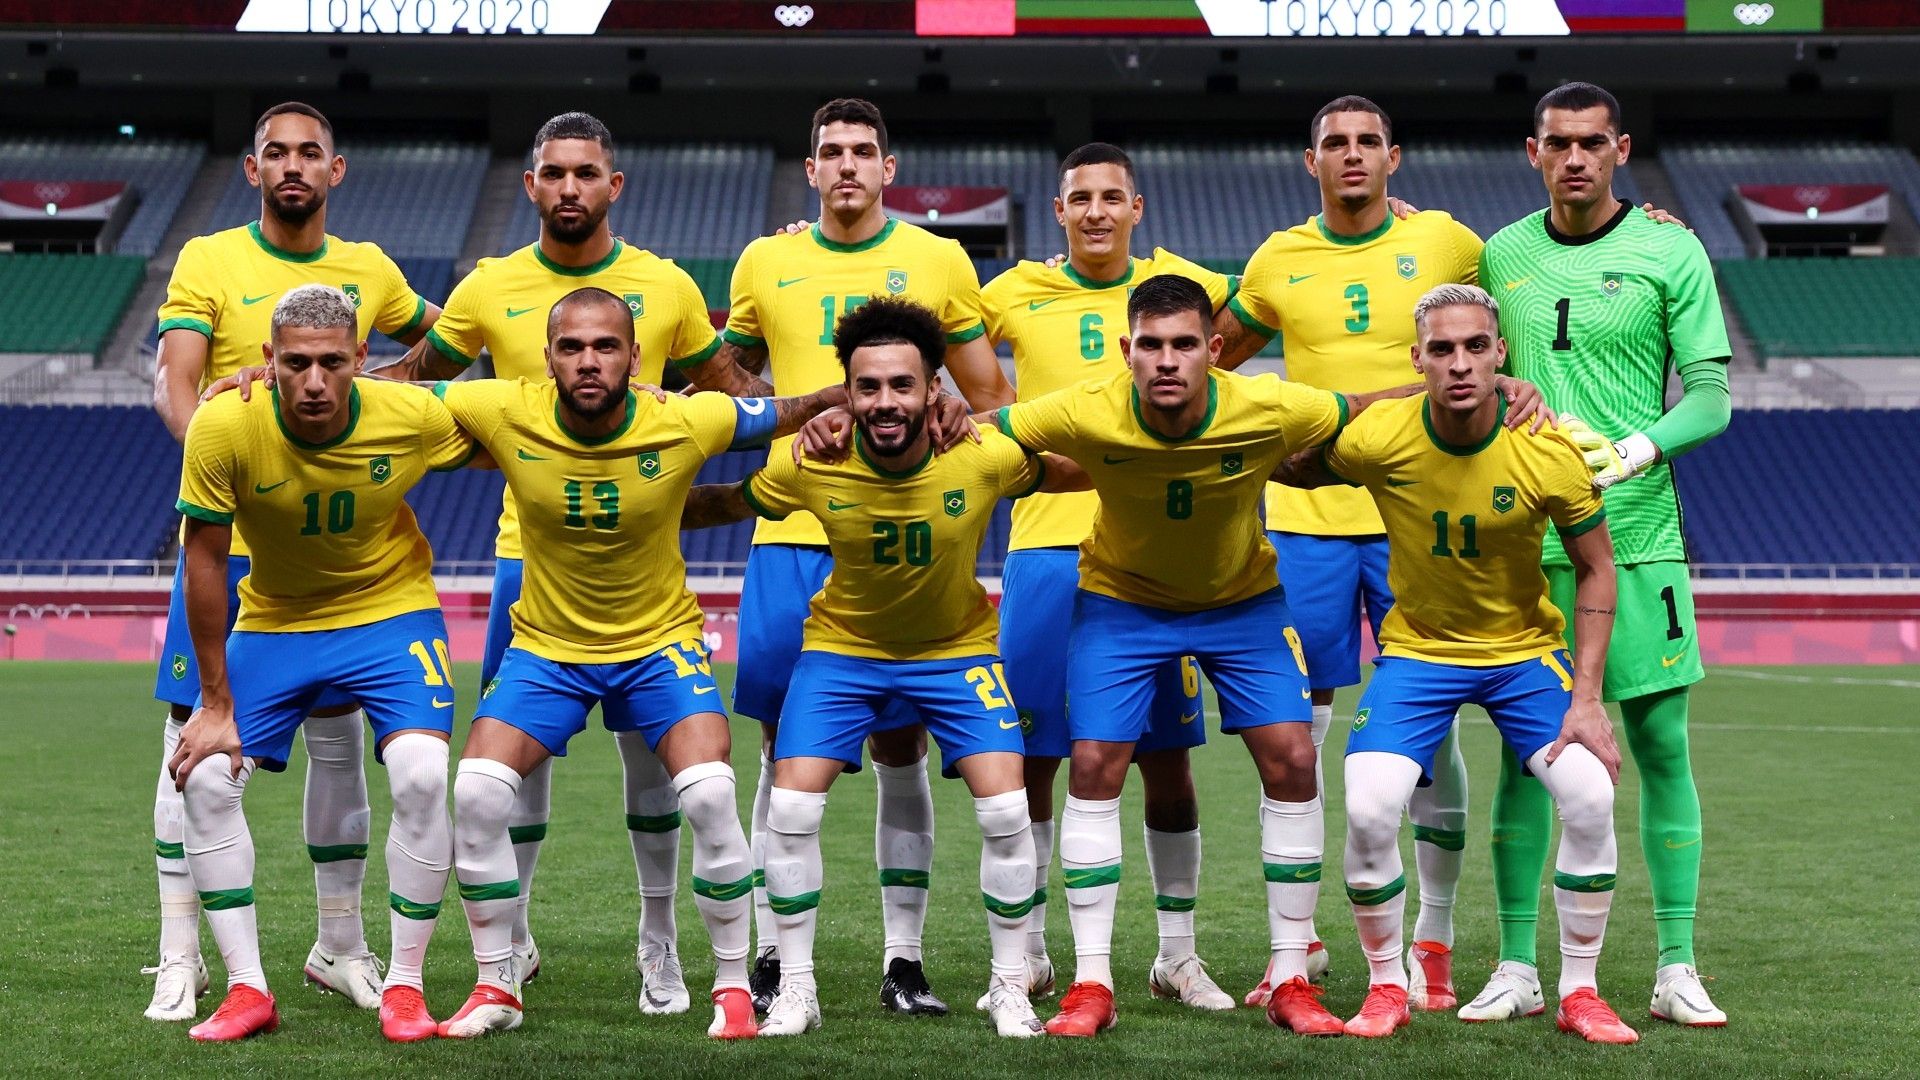 Texts of Brazil サッカー趣味